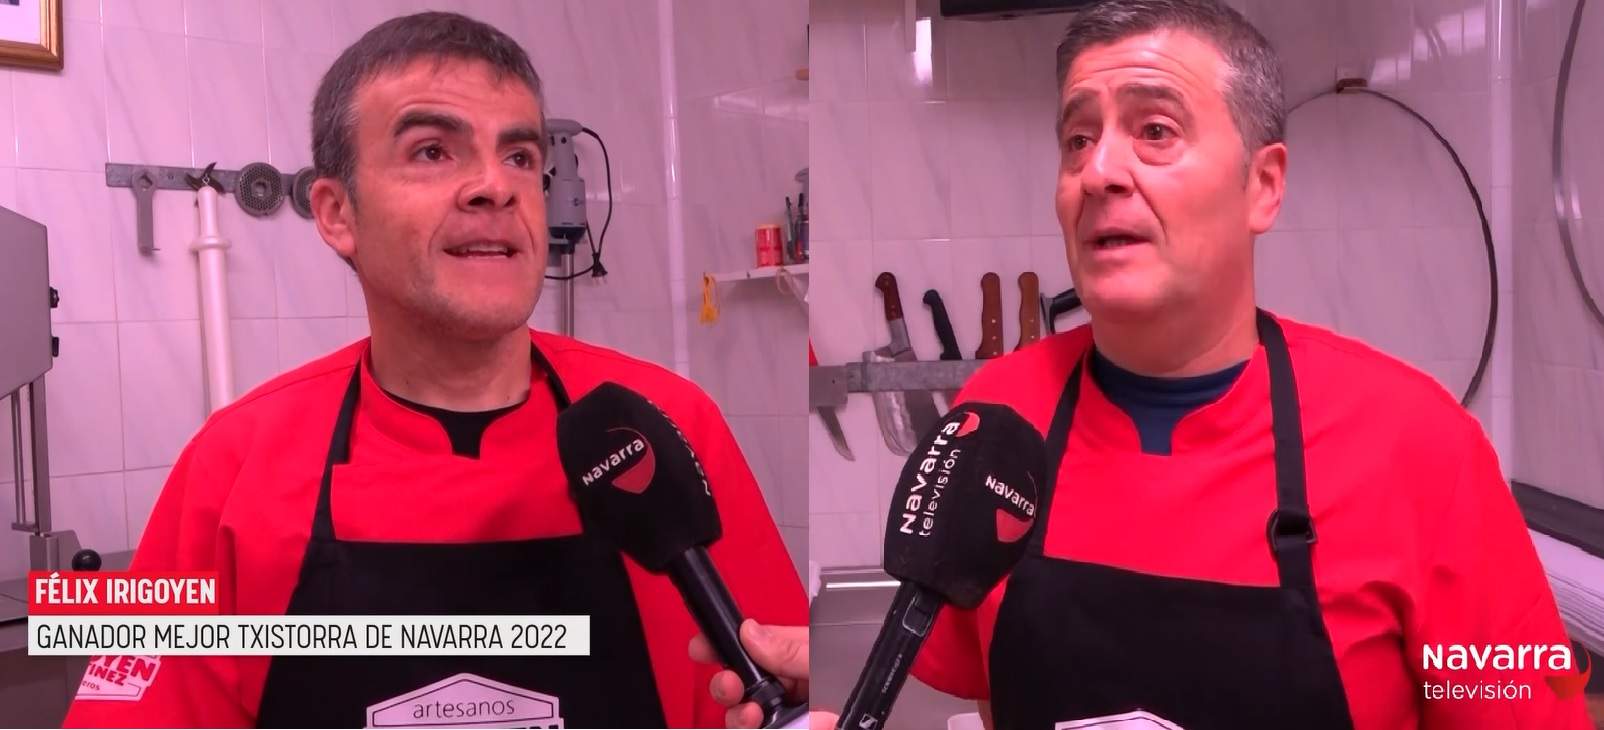 Foto de video montaje, de los dos carniceros irigoyen martinez en carniceria trabajando